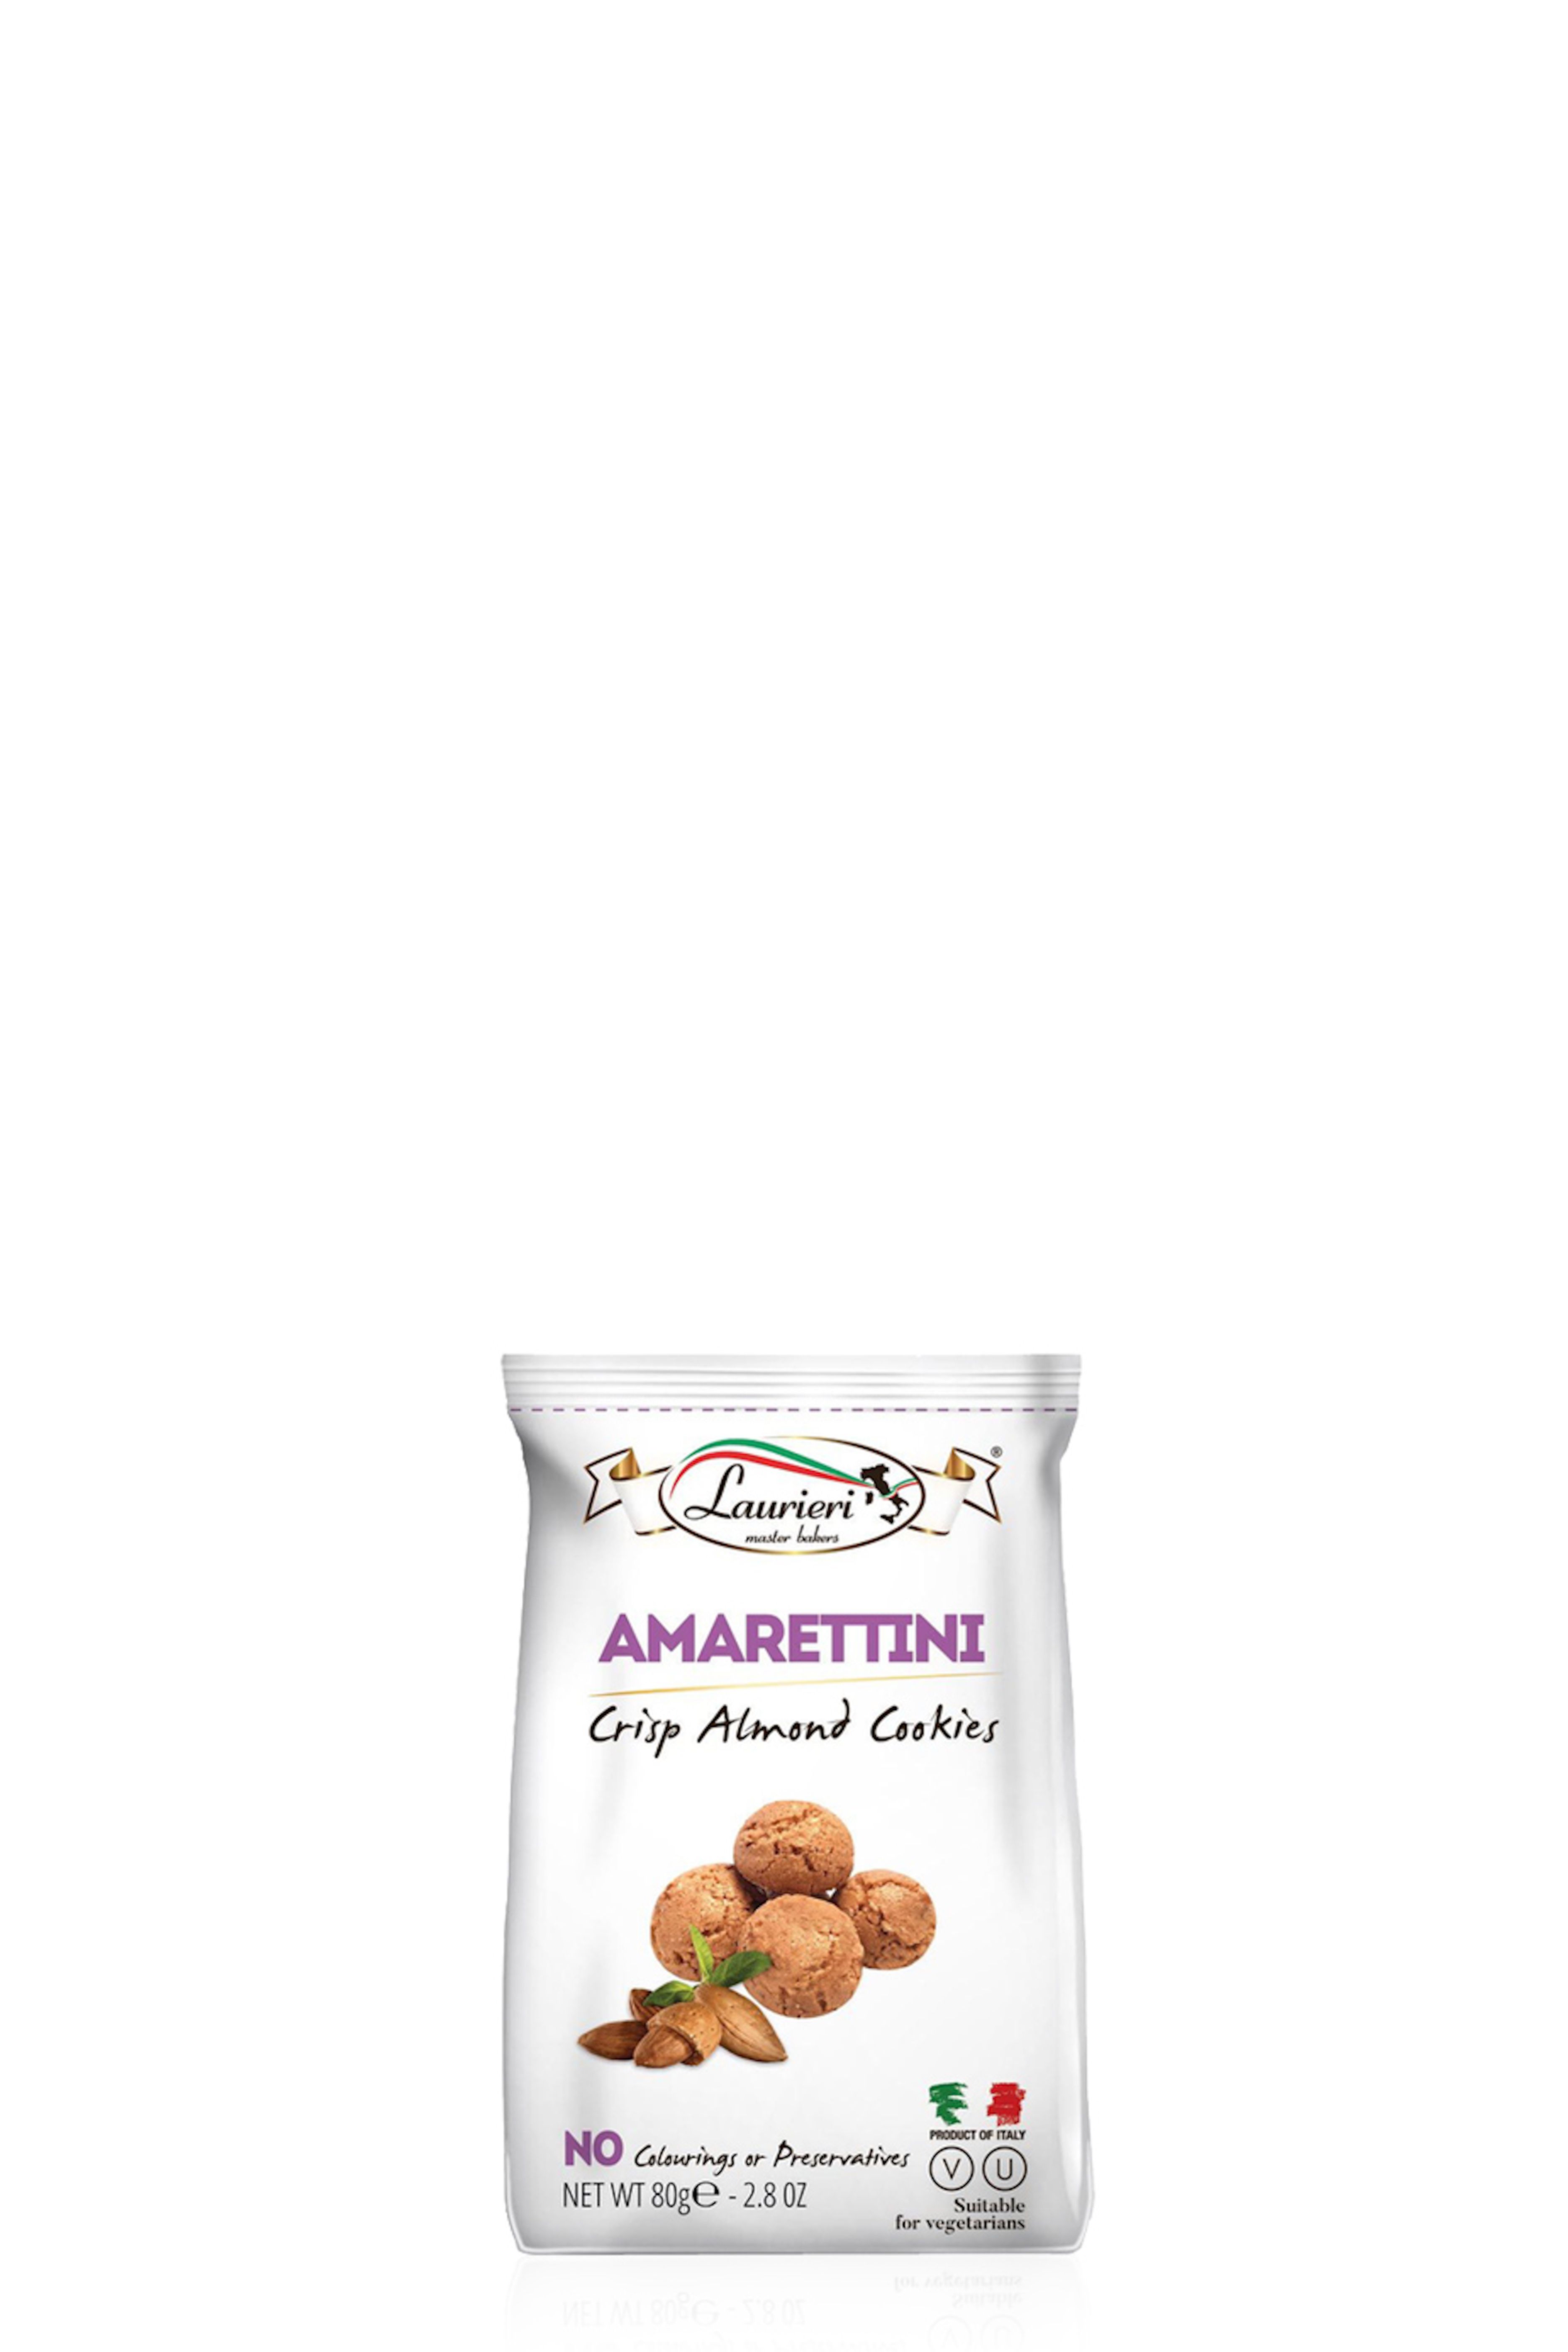 Amarettini Crisp Almond Cookies